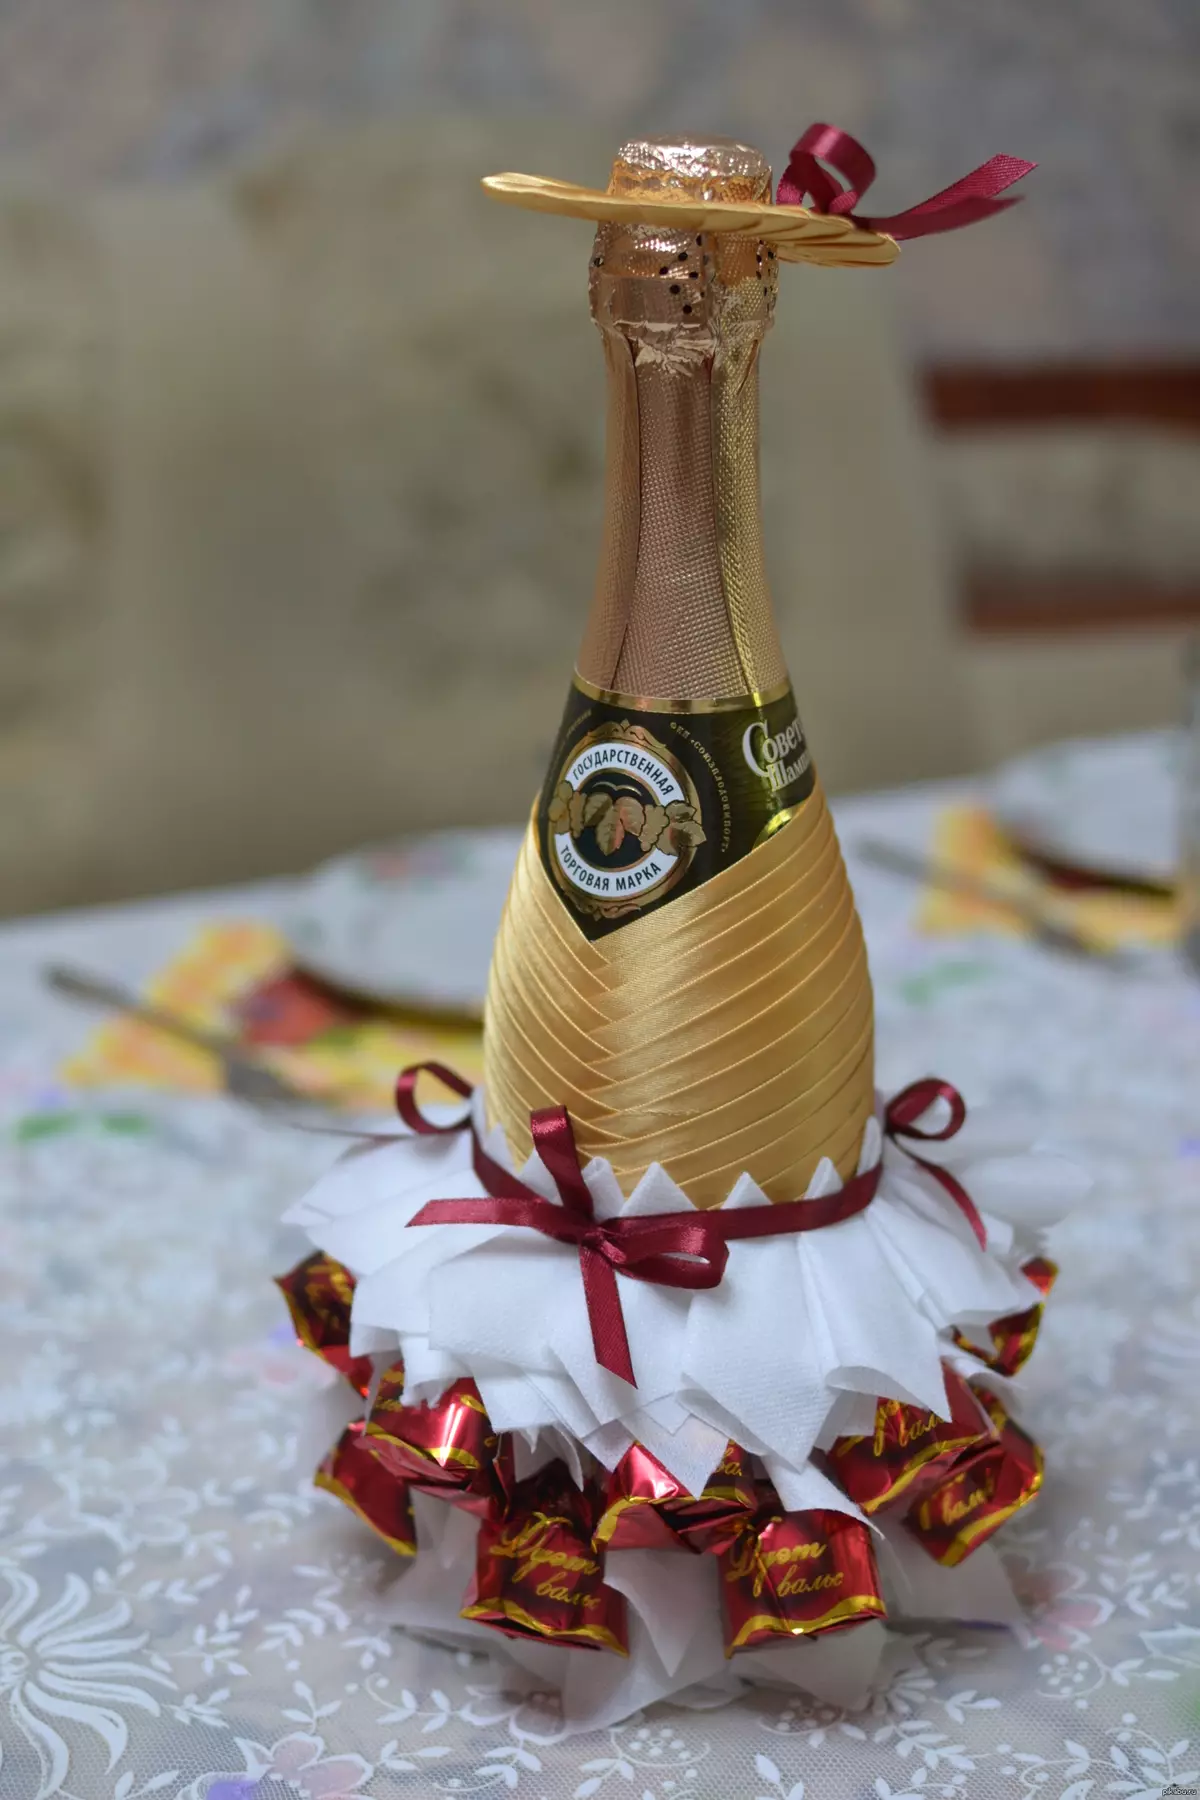 زينت الشمبانيا مع الحلوى للعام الجديد: الديكور زجاجة بأيديهم في شكل الأناناس، تصميم الذكور والديكور للنساء 7613_9